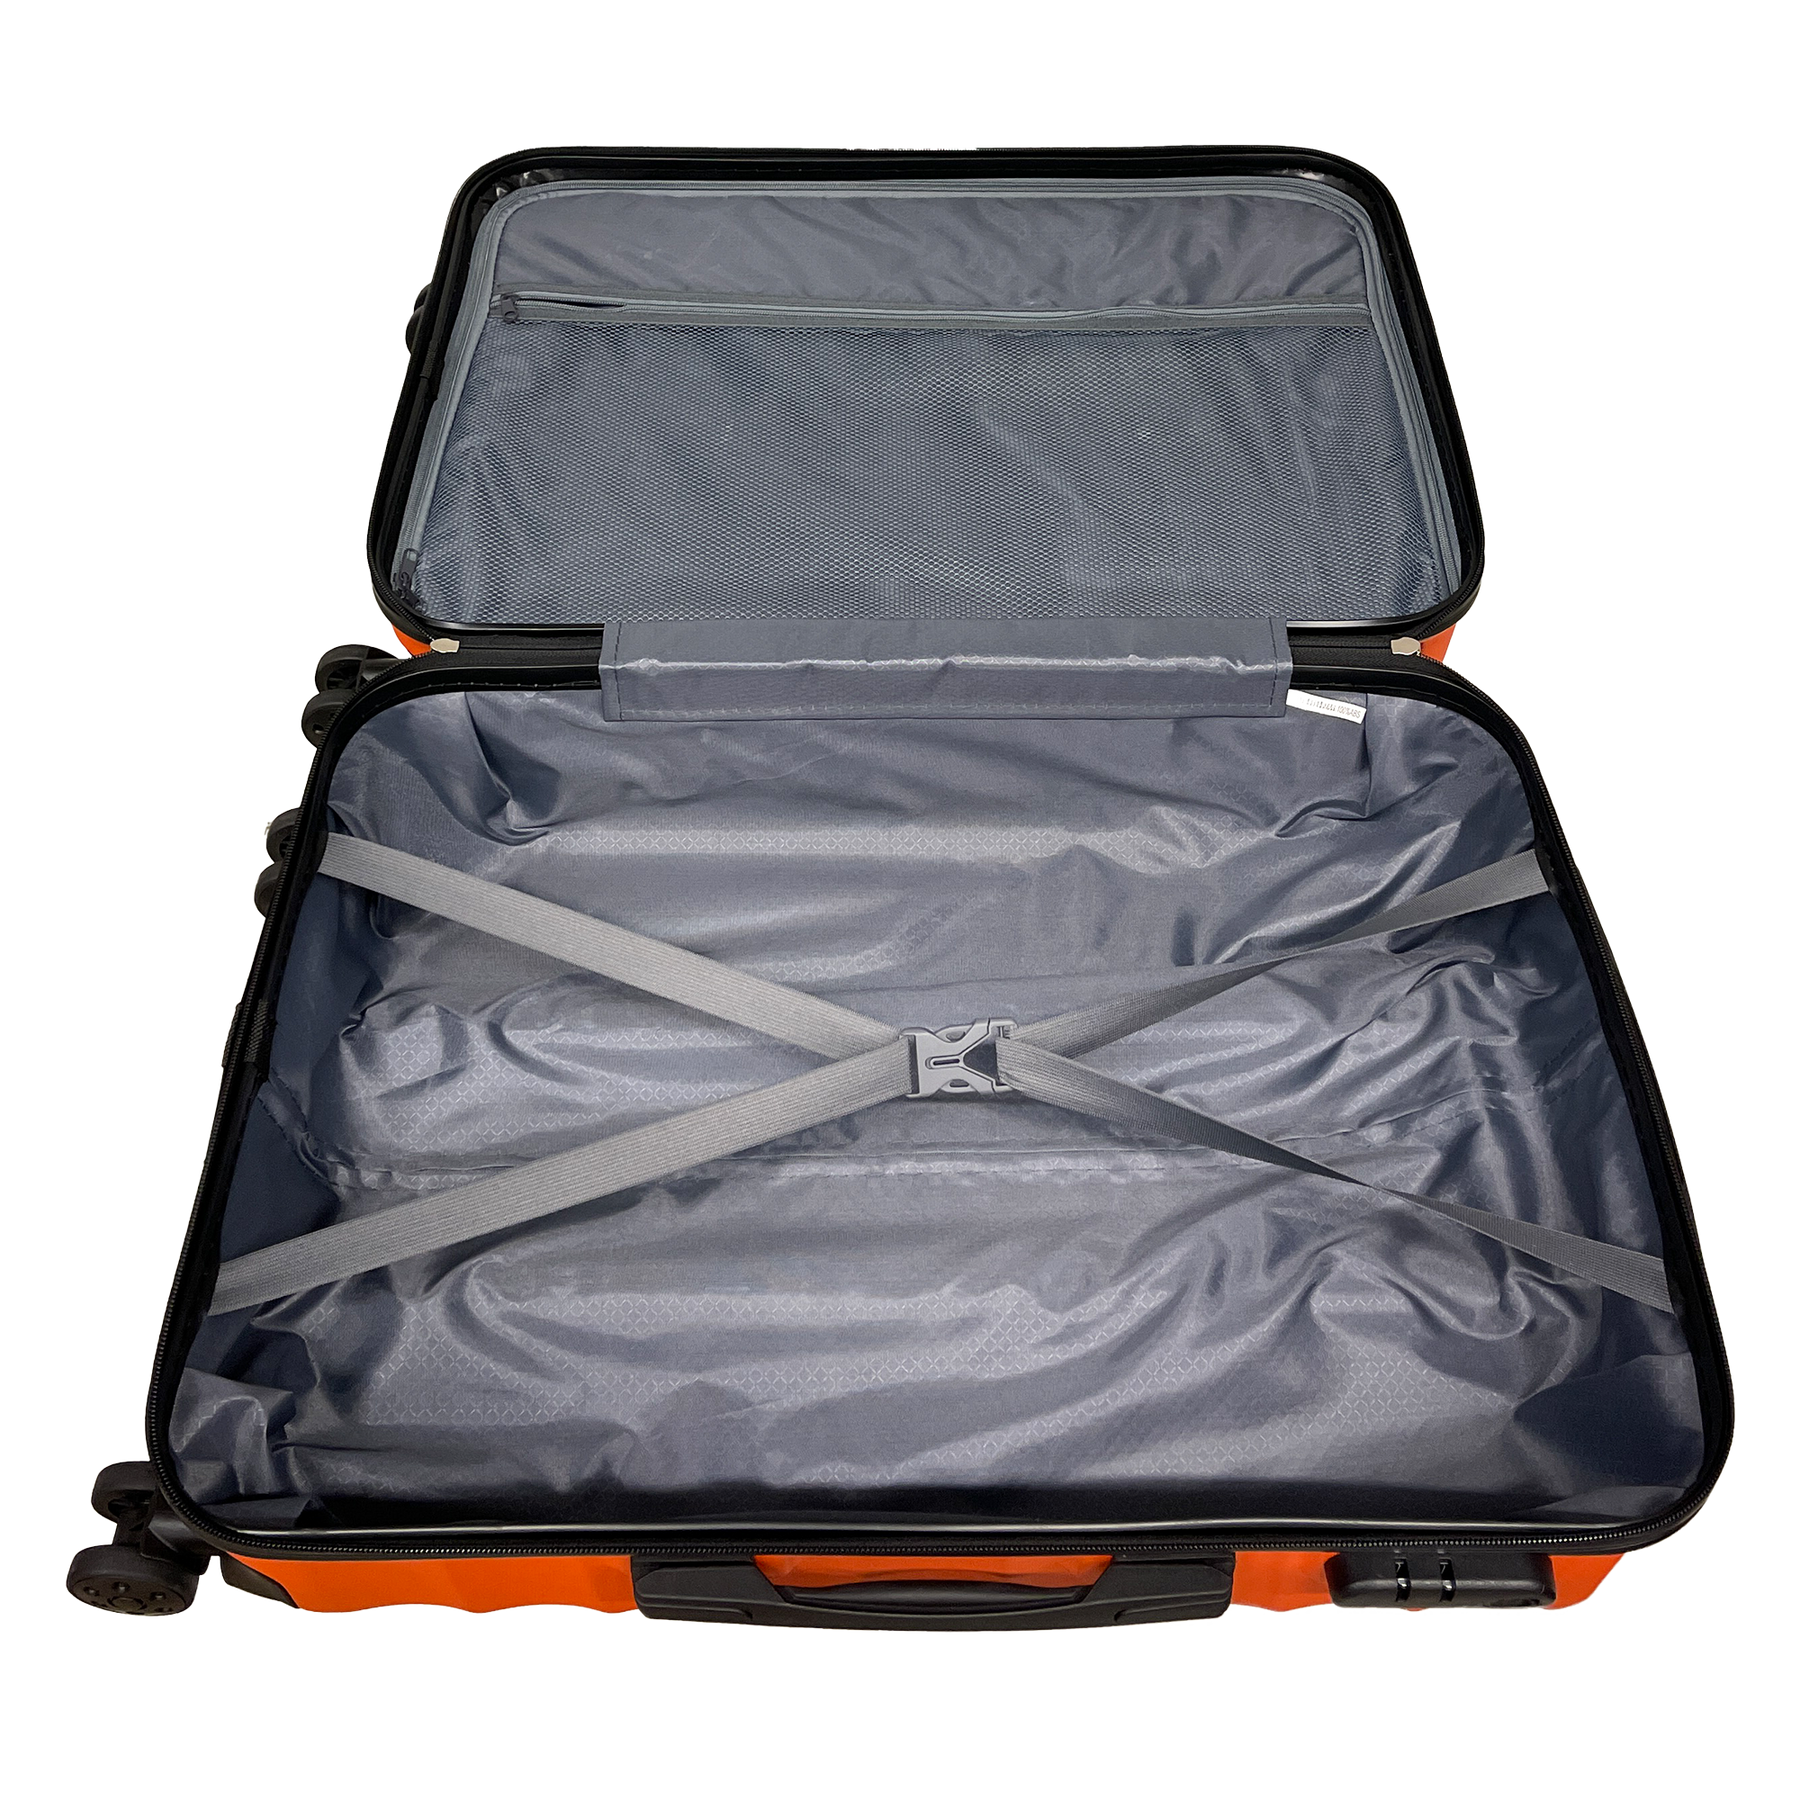 Ormi DuoLine Valise Moyenne à roulettes Rigide 65x45x25 cm Ultra Légère en ABS avec 4 Roues Pivotantes à 360°